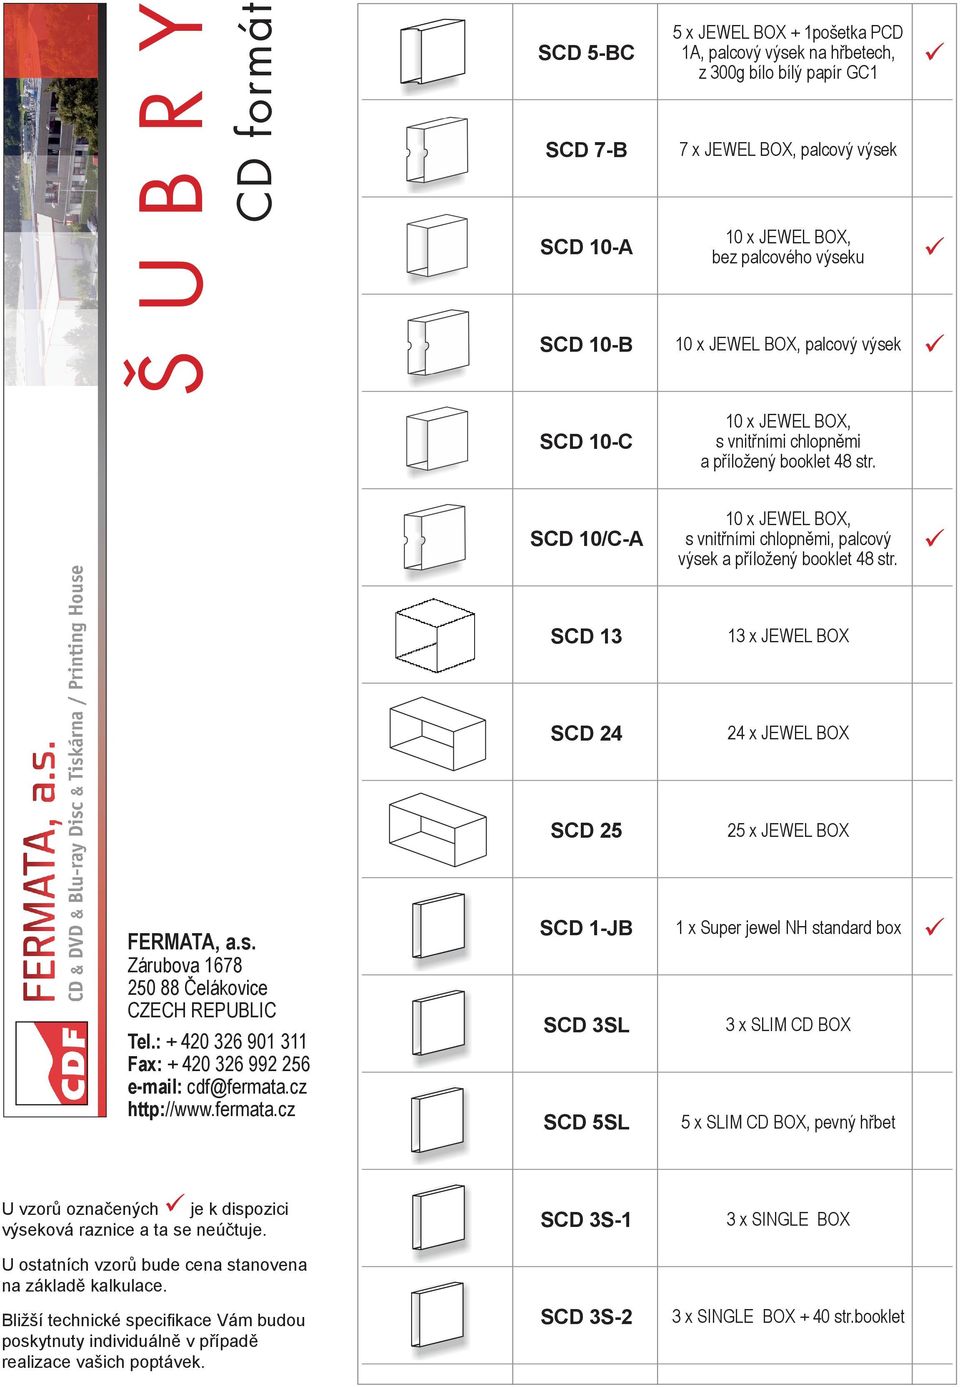 SCD 10/C-A 10 x JEWEL BOX, s vnitřními chlopněmi, palcový výsek a příložený booklet 48 str.